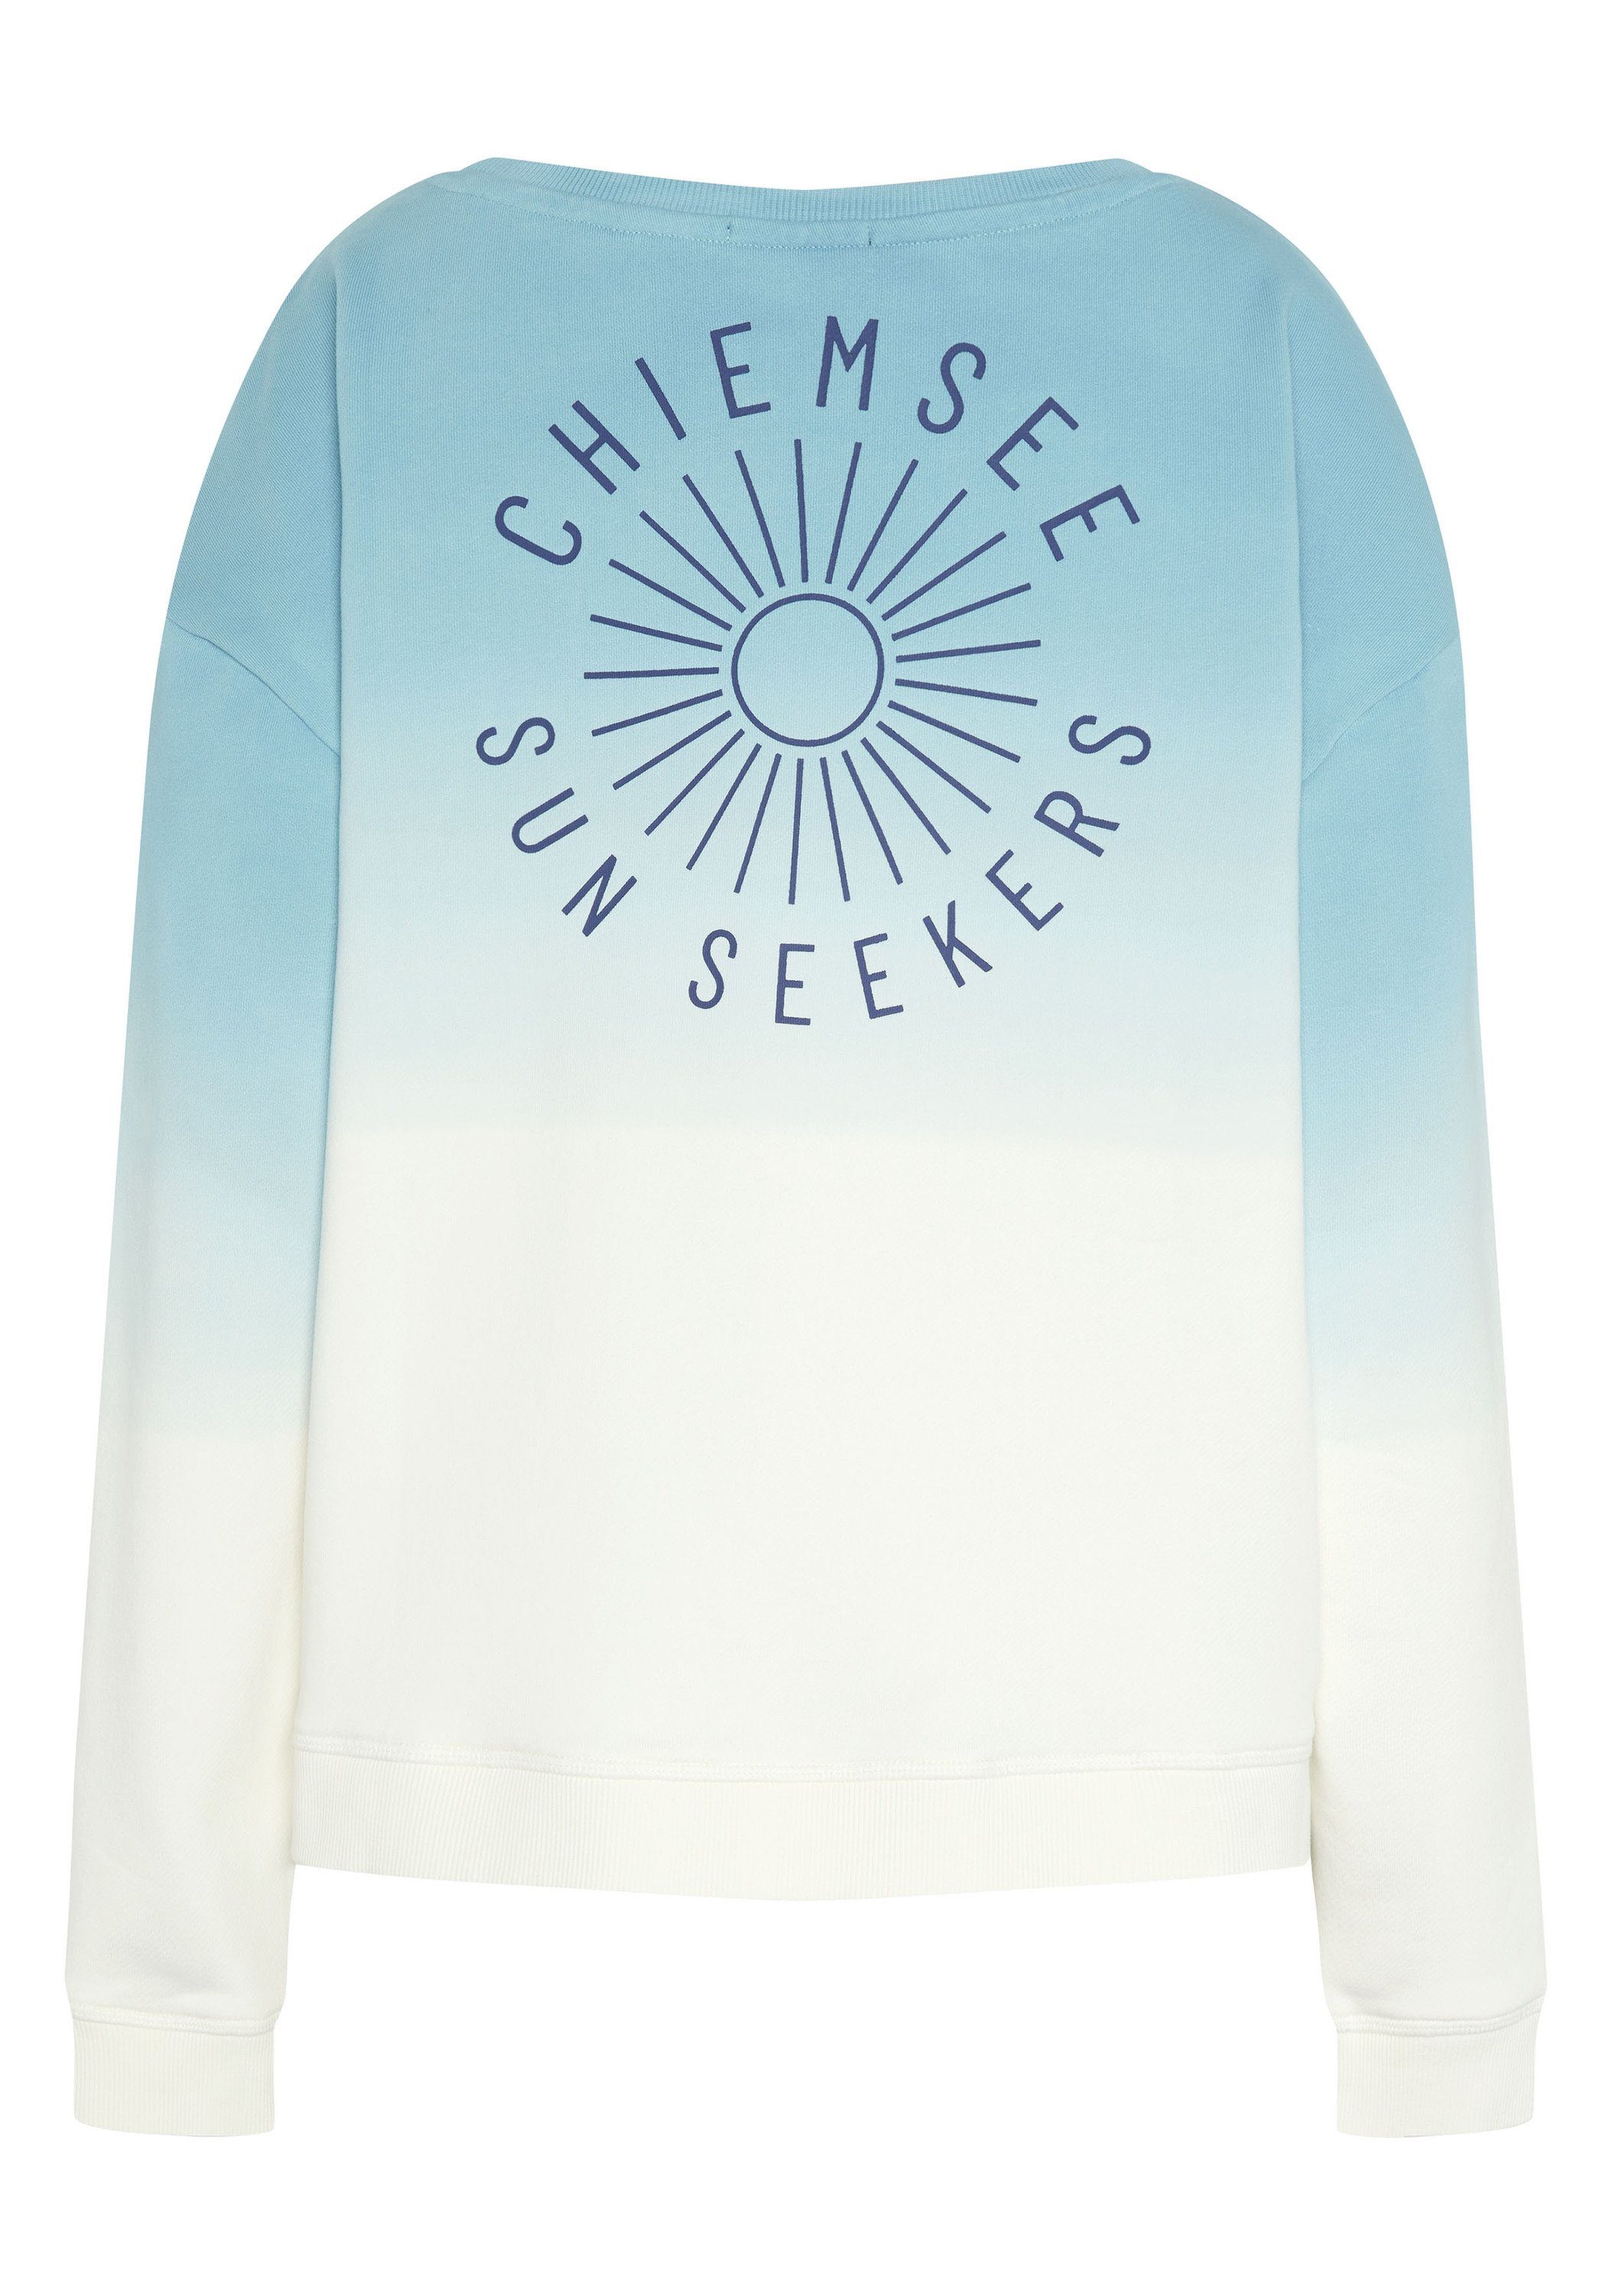 Chiemsee Sweatshirt Sweater mit Print und Medium 4510 1 Farbverlauf Blue/White